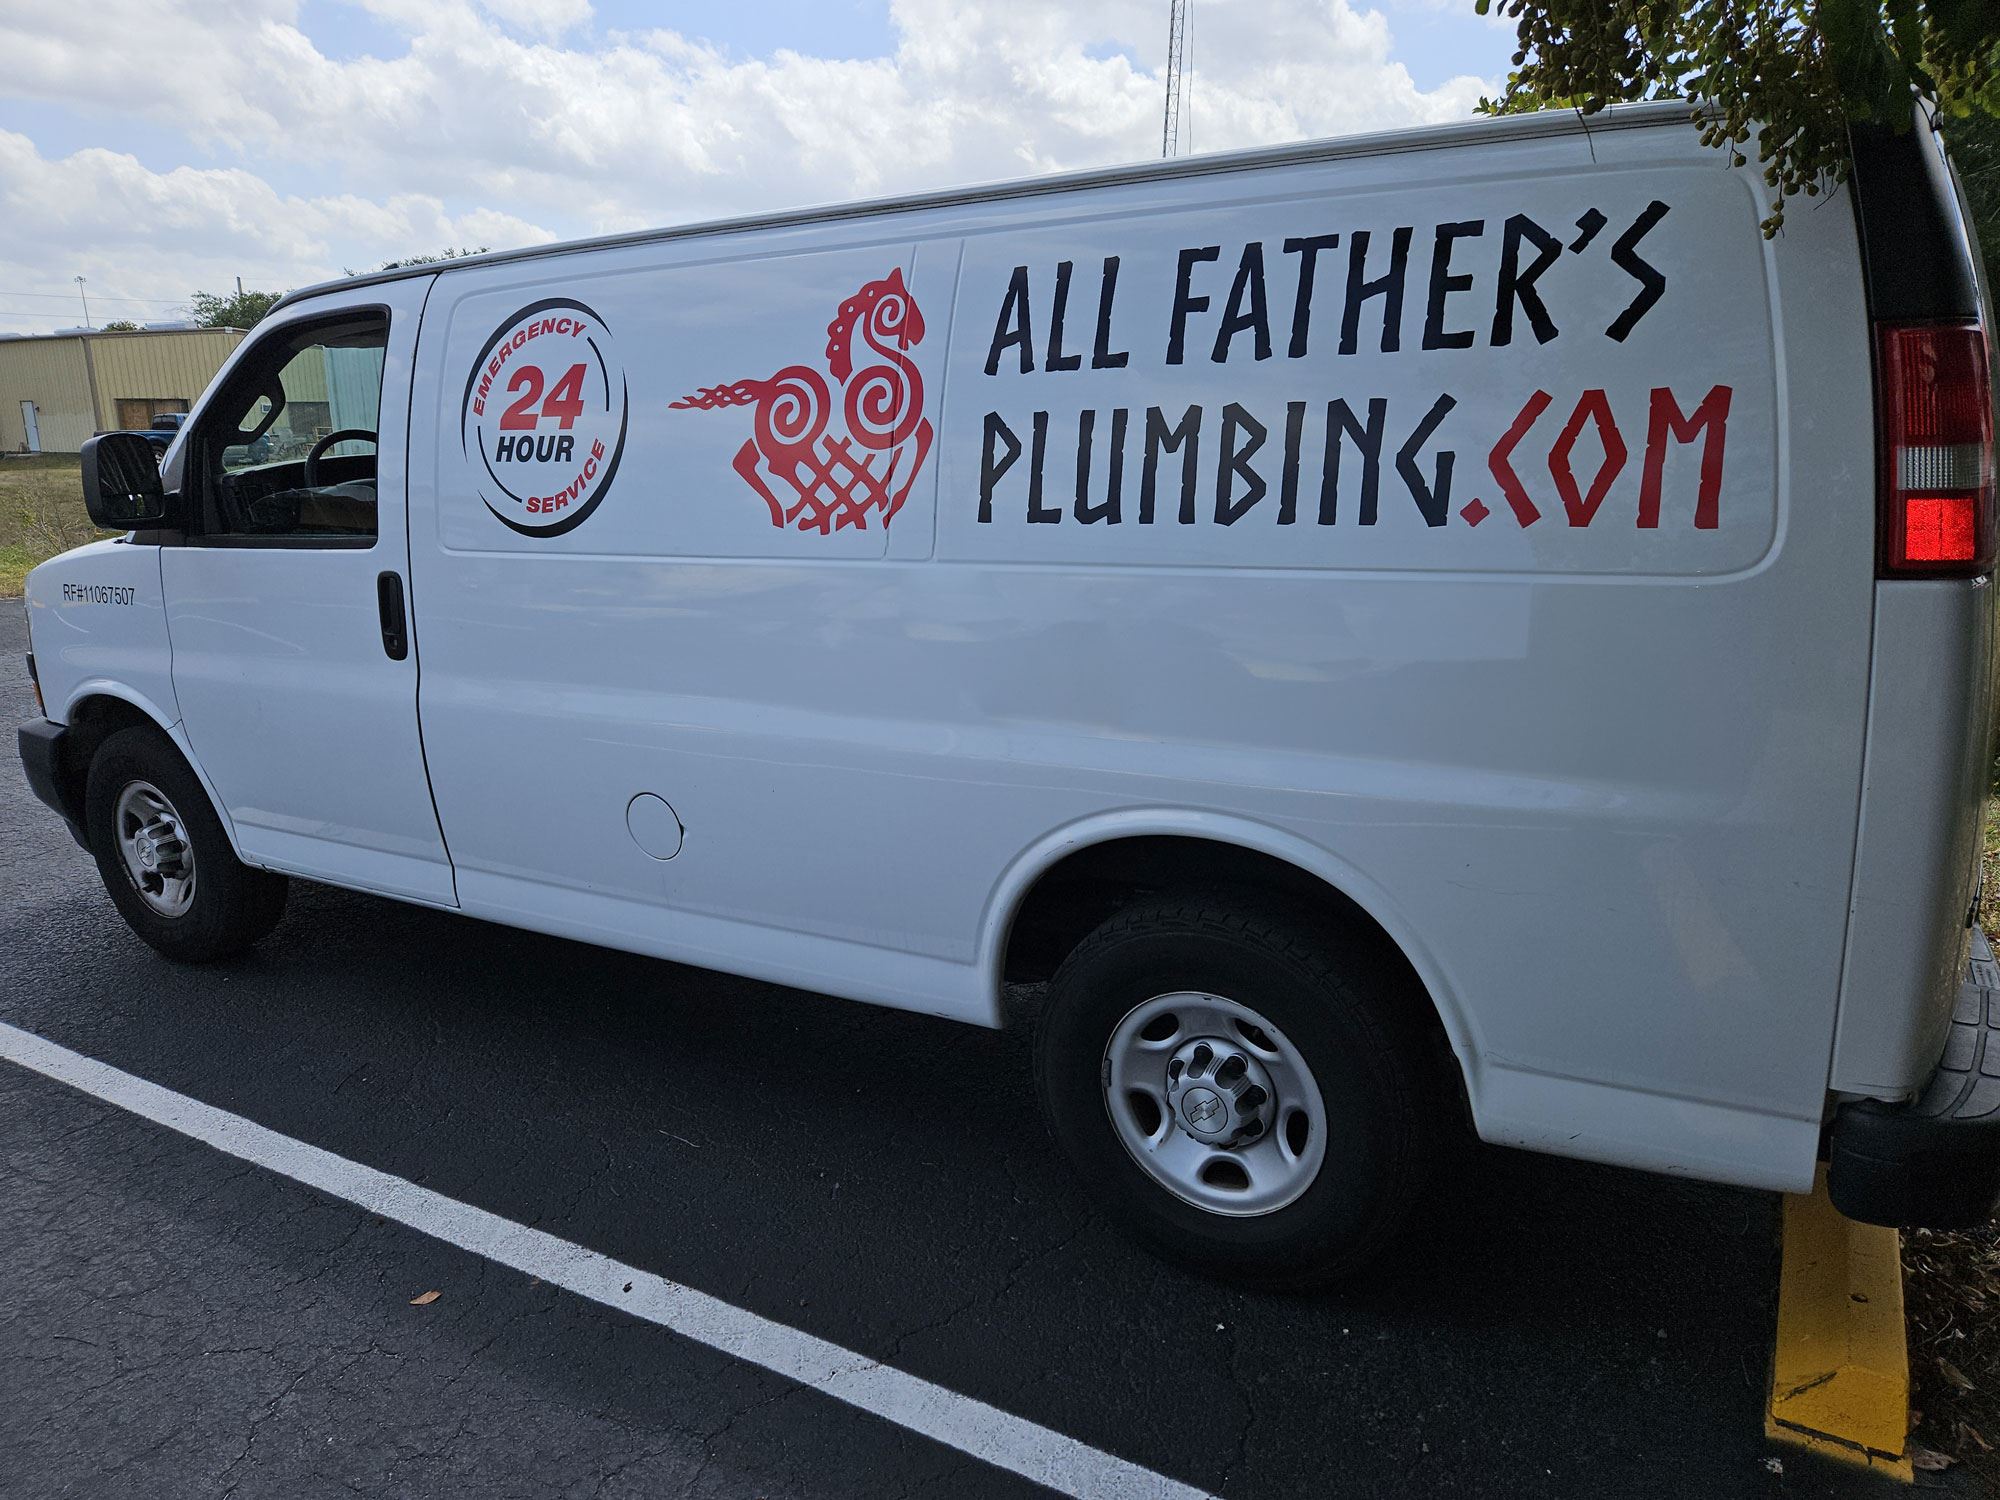 All Father's Plumbing van